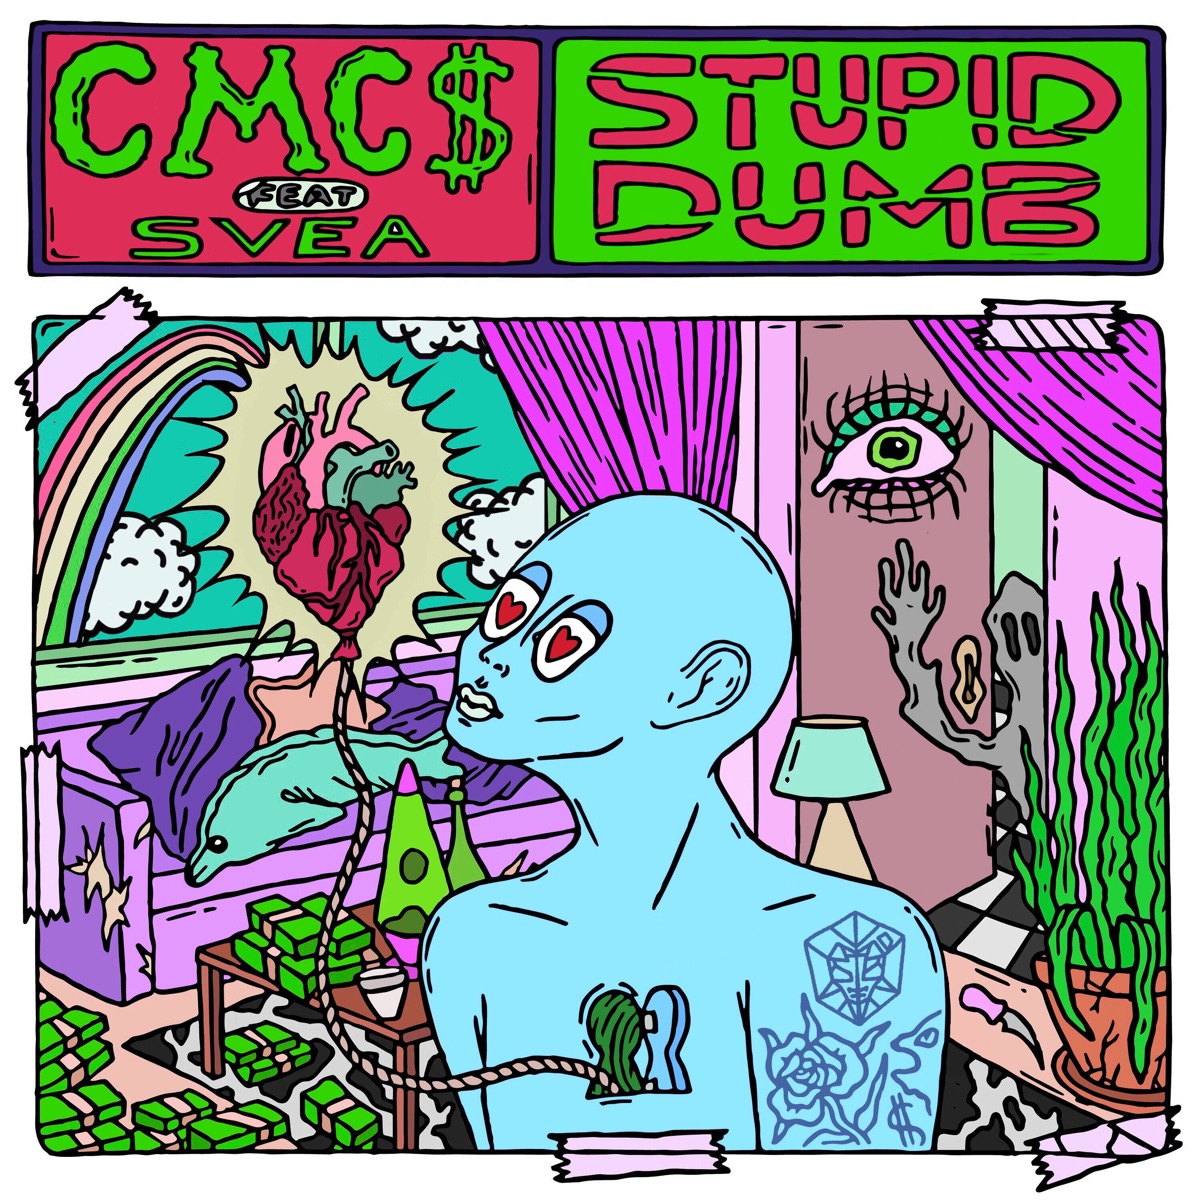 Stupid Dumb (feat. SVEA) - Single by CMC$ on Apple Music